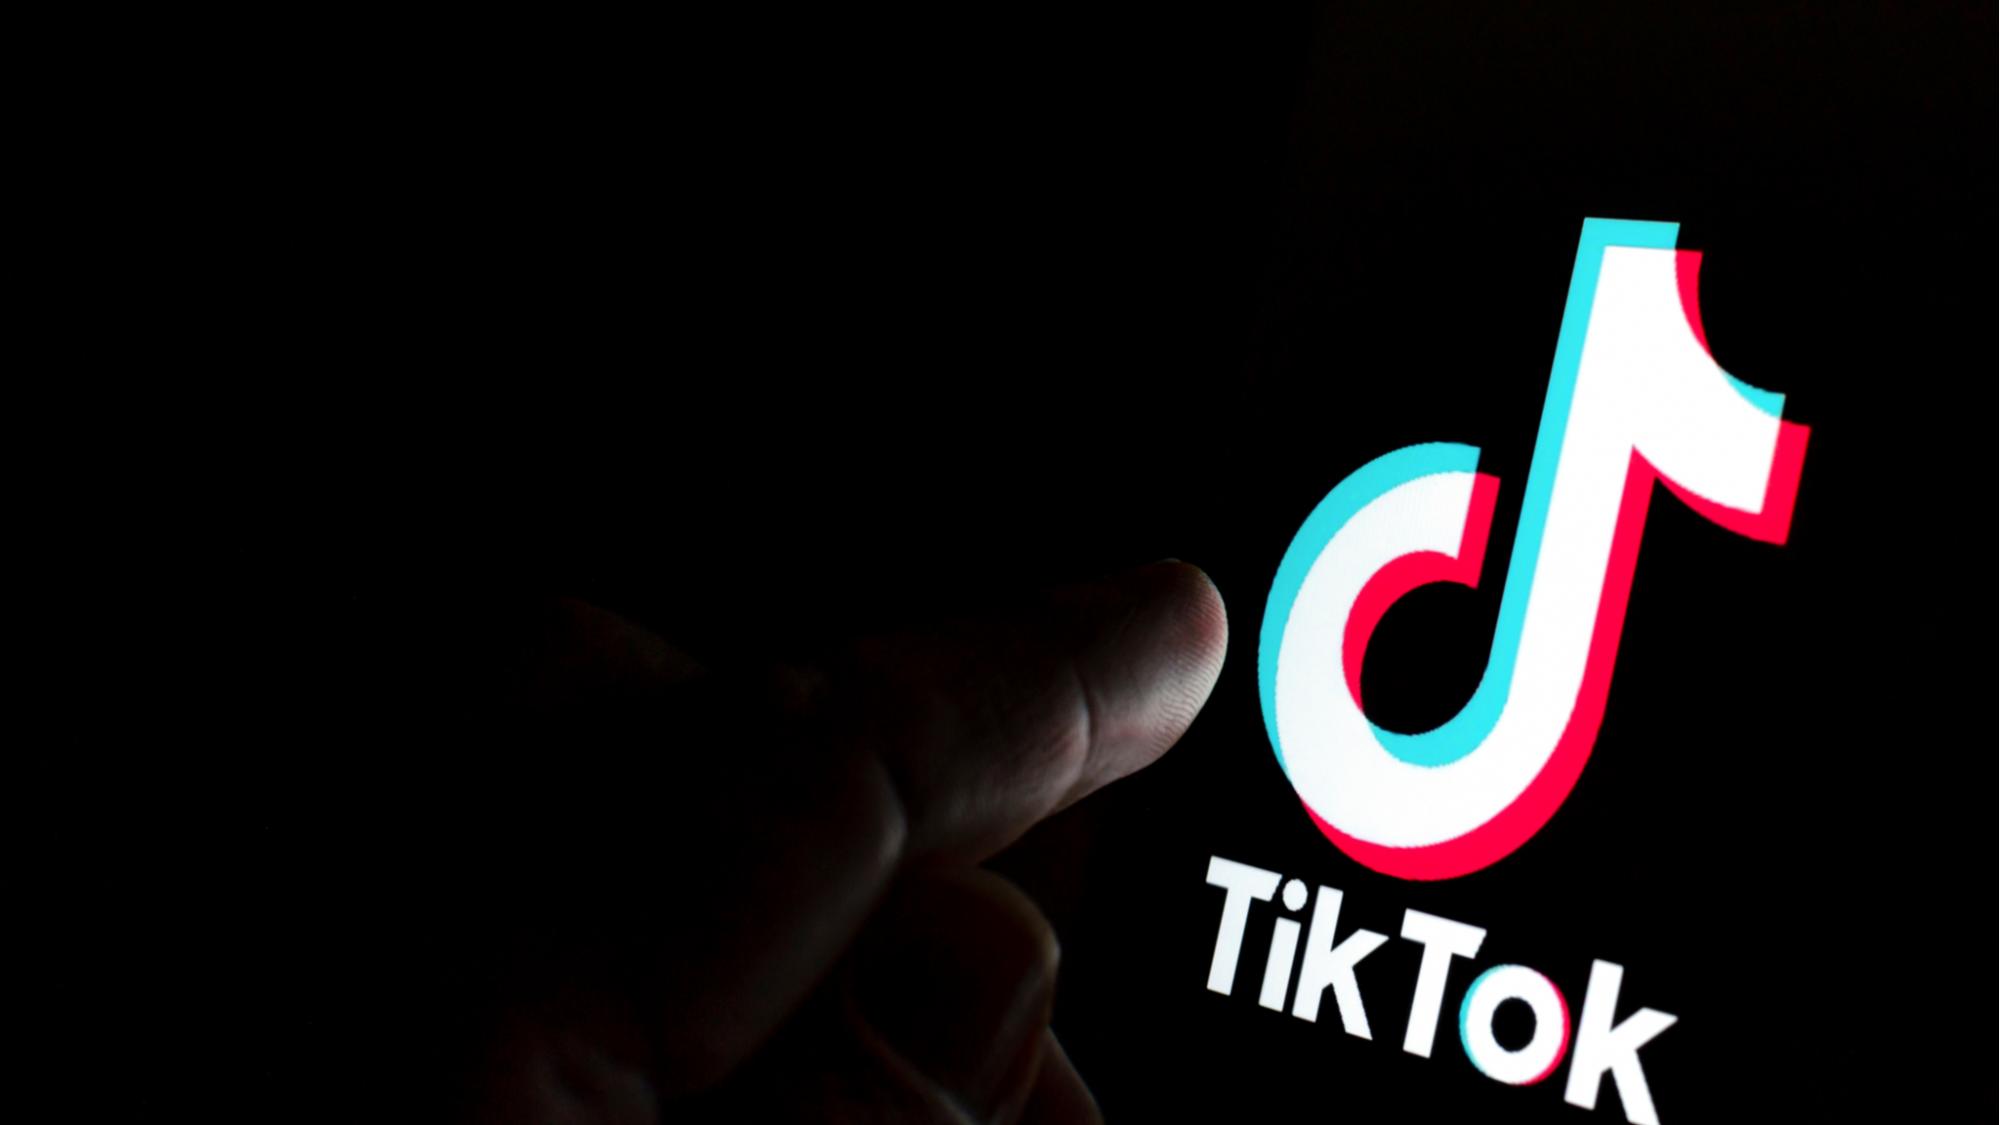 Звезда TikTok неожиданно умерла спустя два дня после публикации жуткого видео